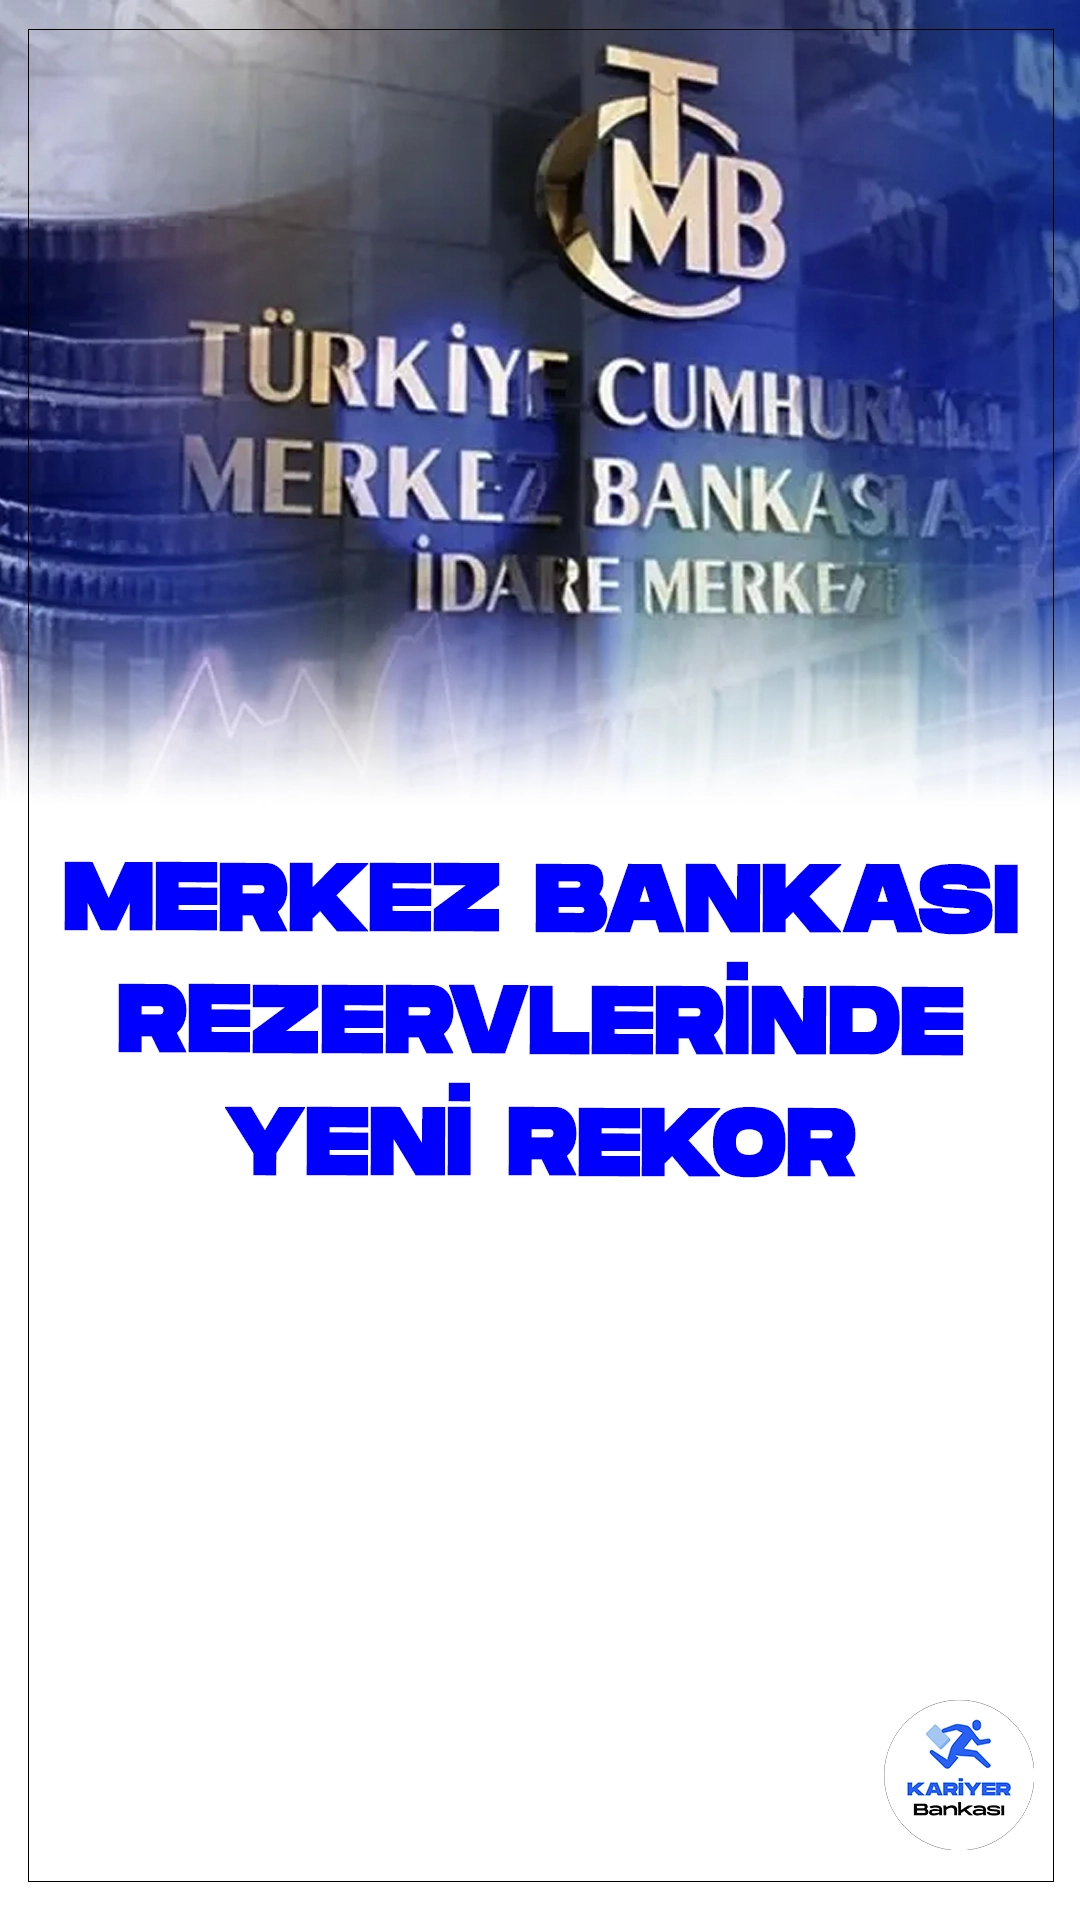 Merkez Bankası Rezervlerinde Yeni Rekor.Türkiye Cumhuriyeti Merkez Bankası (TCMB) toplam rezervleri, 5 Temmuz haftasında bir önceki haftaya göre 5 milyar 538 milyon dolar artışla 148 milyar 448 milyon dolara çıkarak rekor kırdı. Bu artış, Türkiye'nin finansal istikrarına ve ekonomik güvenine önemli bir katkı sağlıyor.